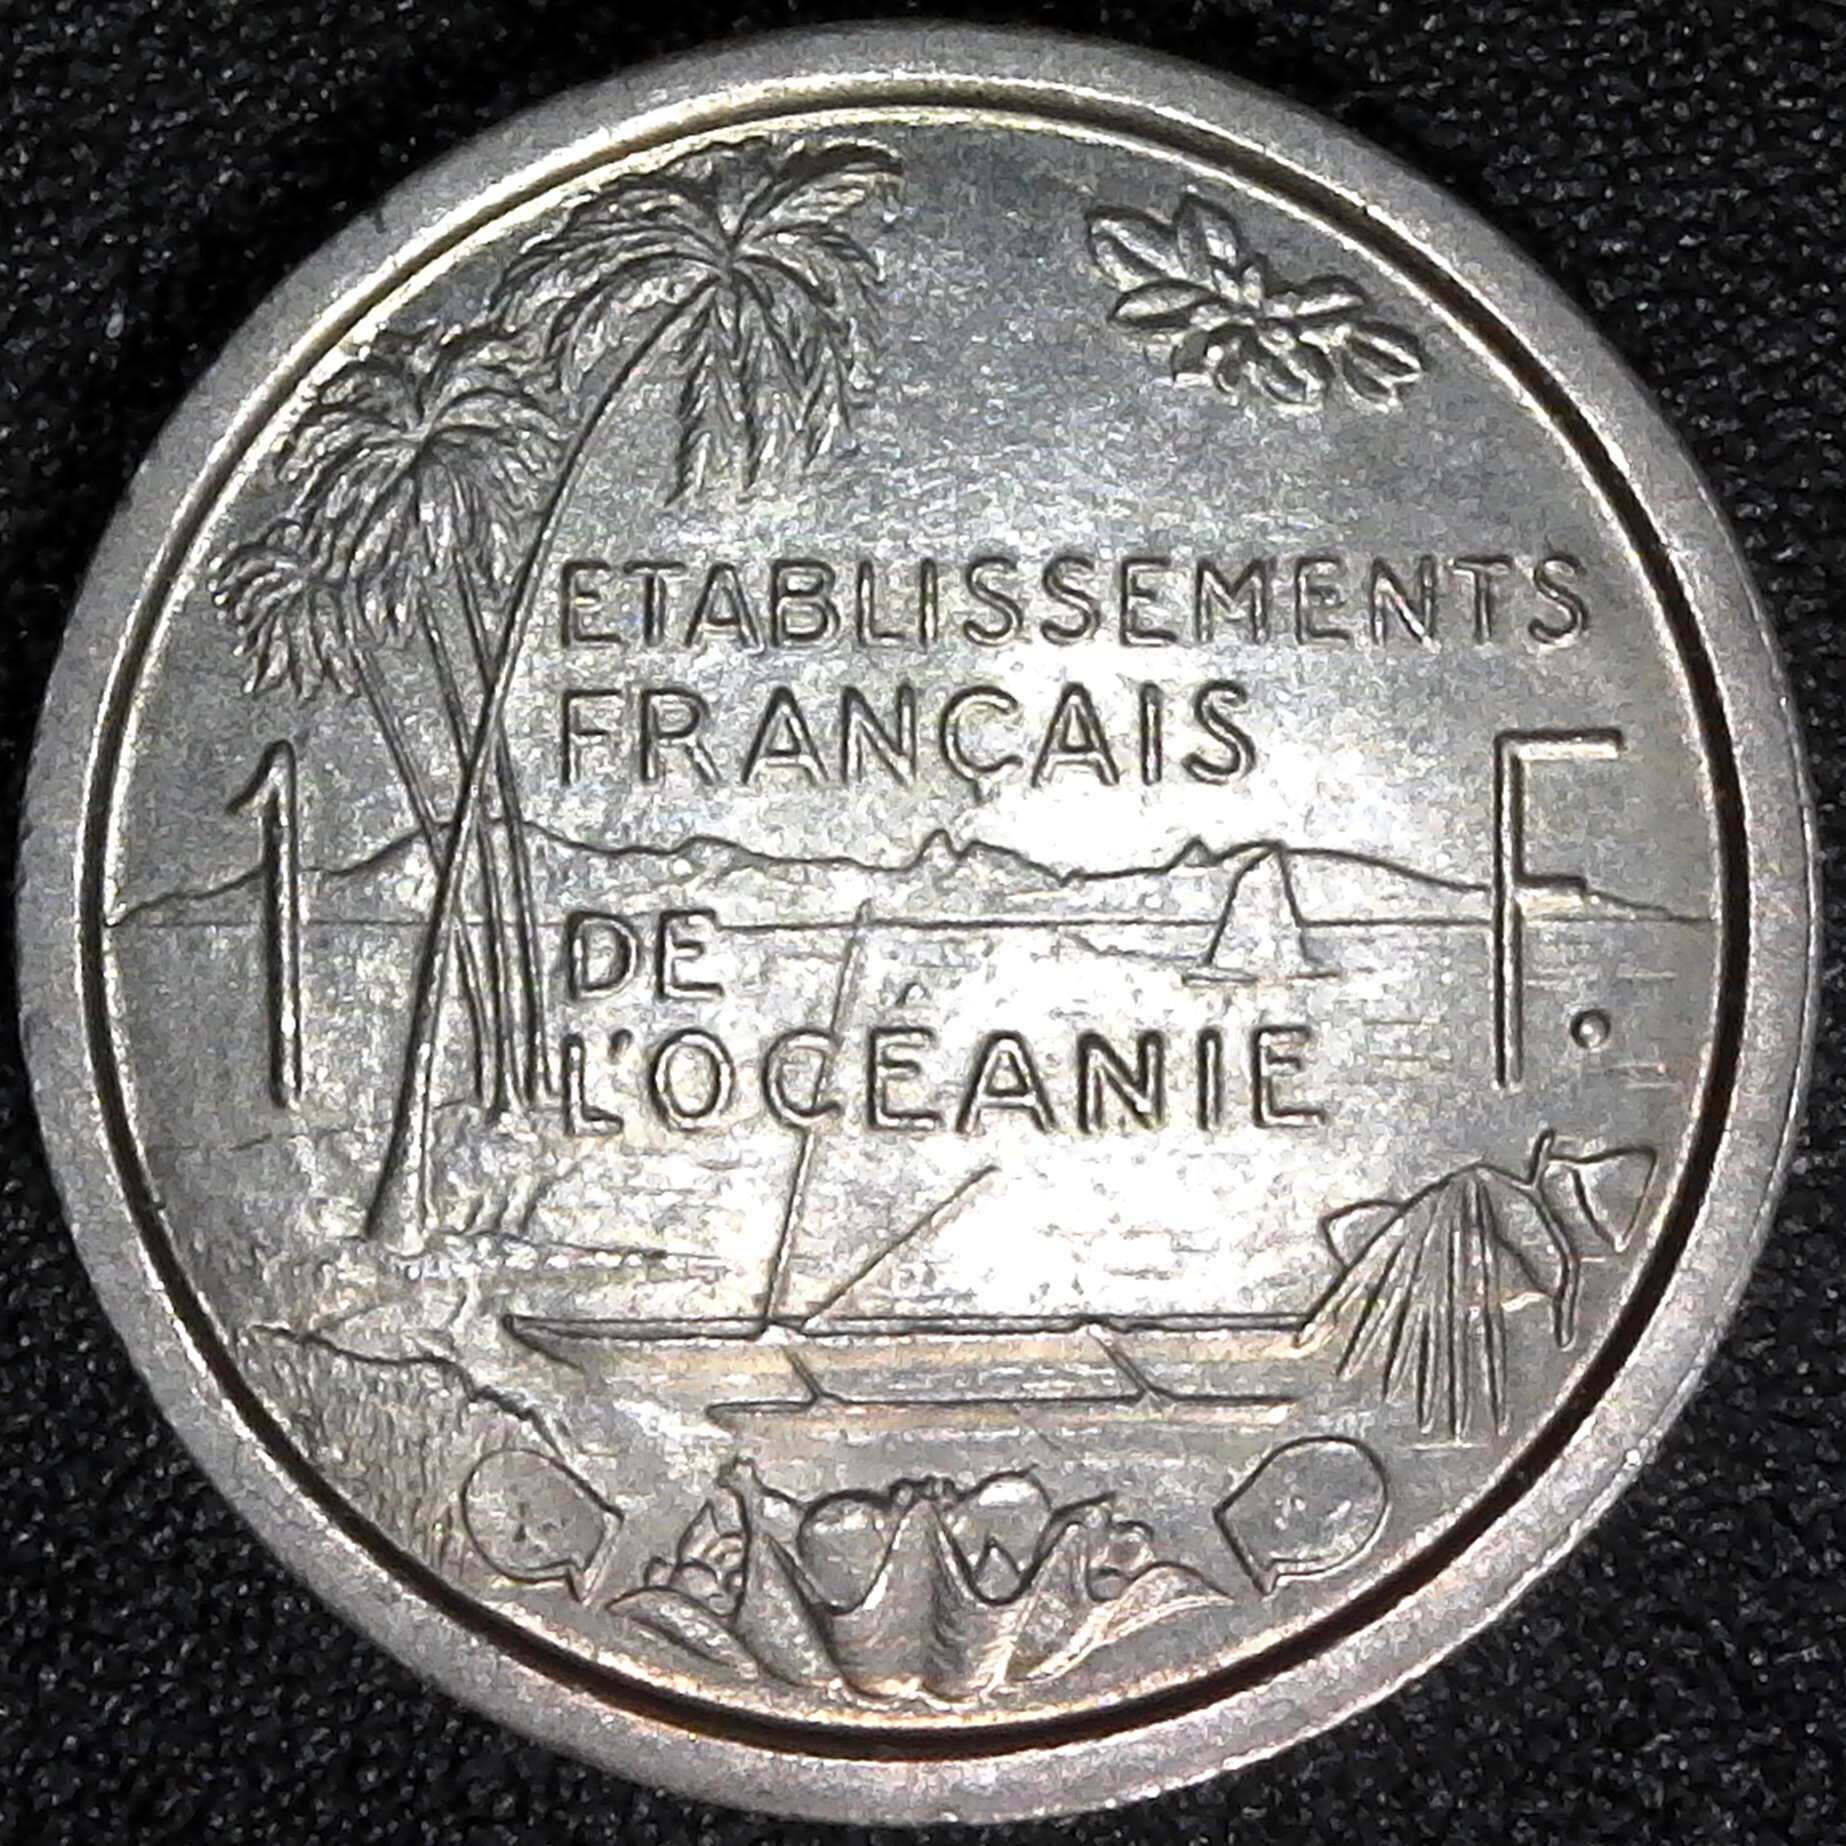 French Oceania 1 Franc Essai 1949 obv.jpg